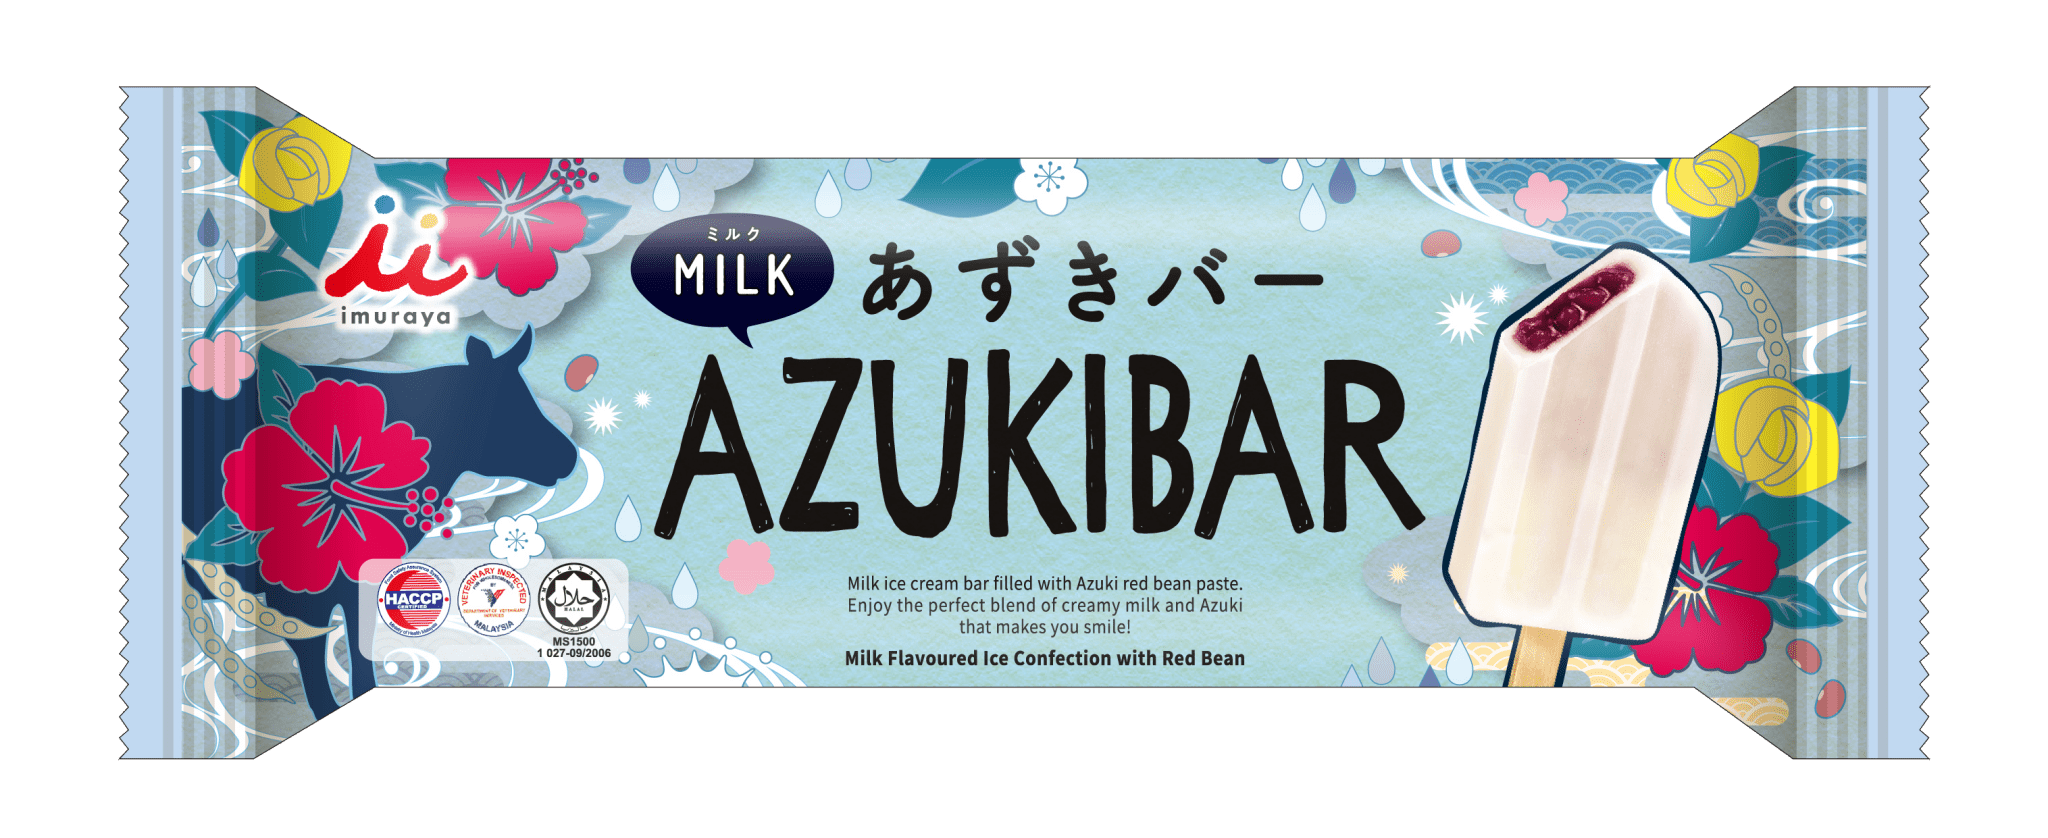 IMURAYA AZUKIBAR MILK HALAL - Tokyo Fresh Direct